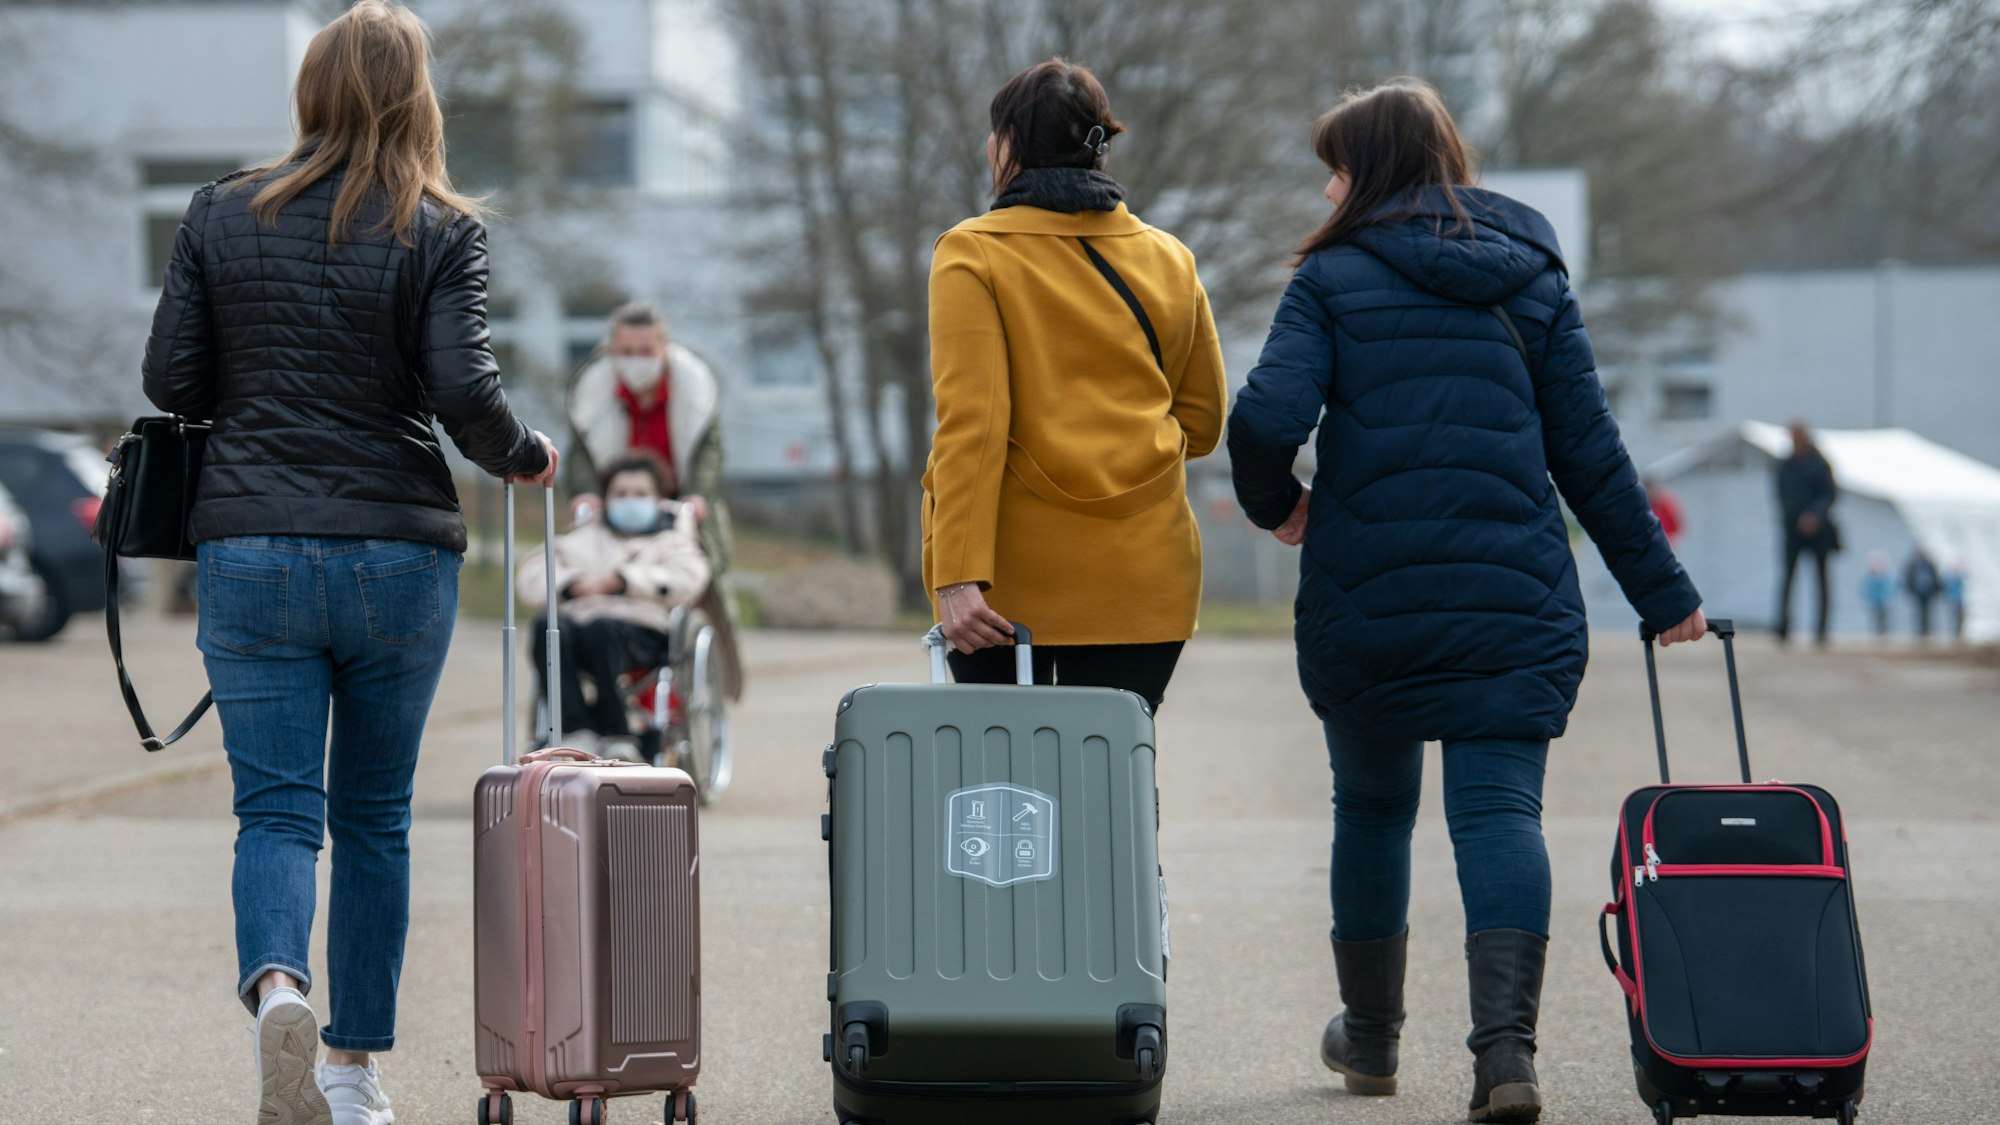 Drei aus der Ukraine stammende Frauen gehen in der Landeserstaufnahmestelle für Flüchtlinge (LEA) zu ihrem Quartier.